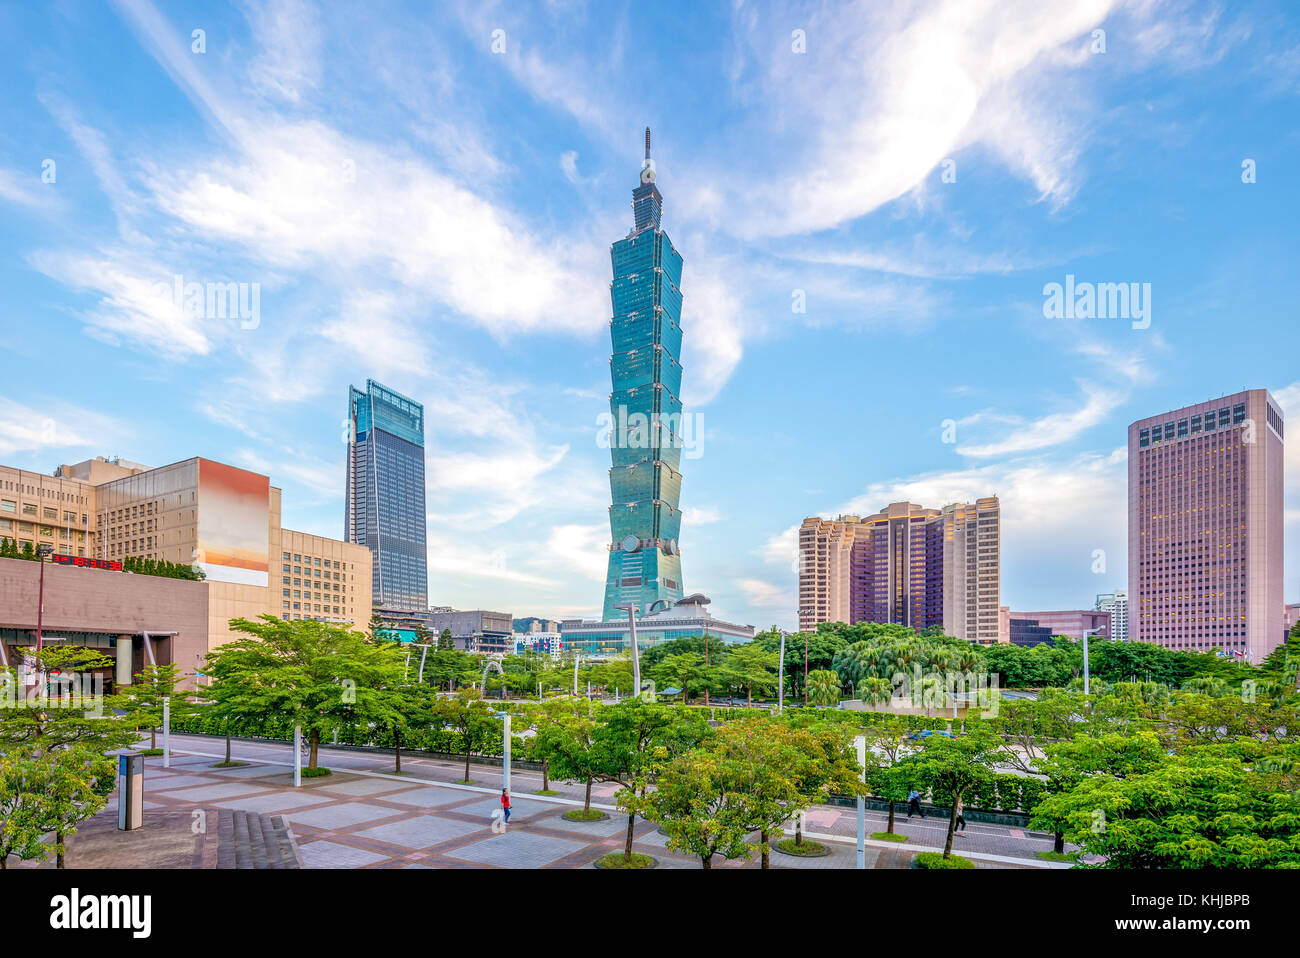 skyline of taipei city with 101 tower Stock Photo